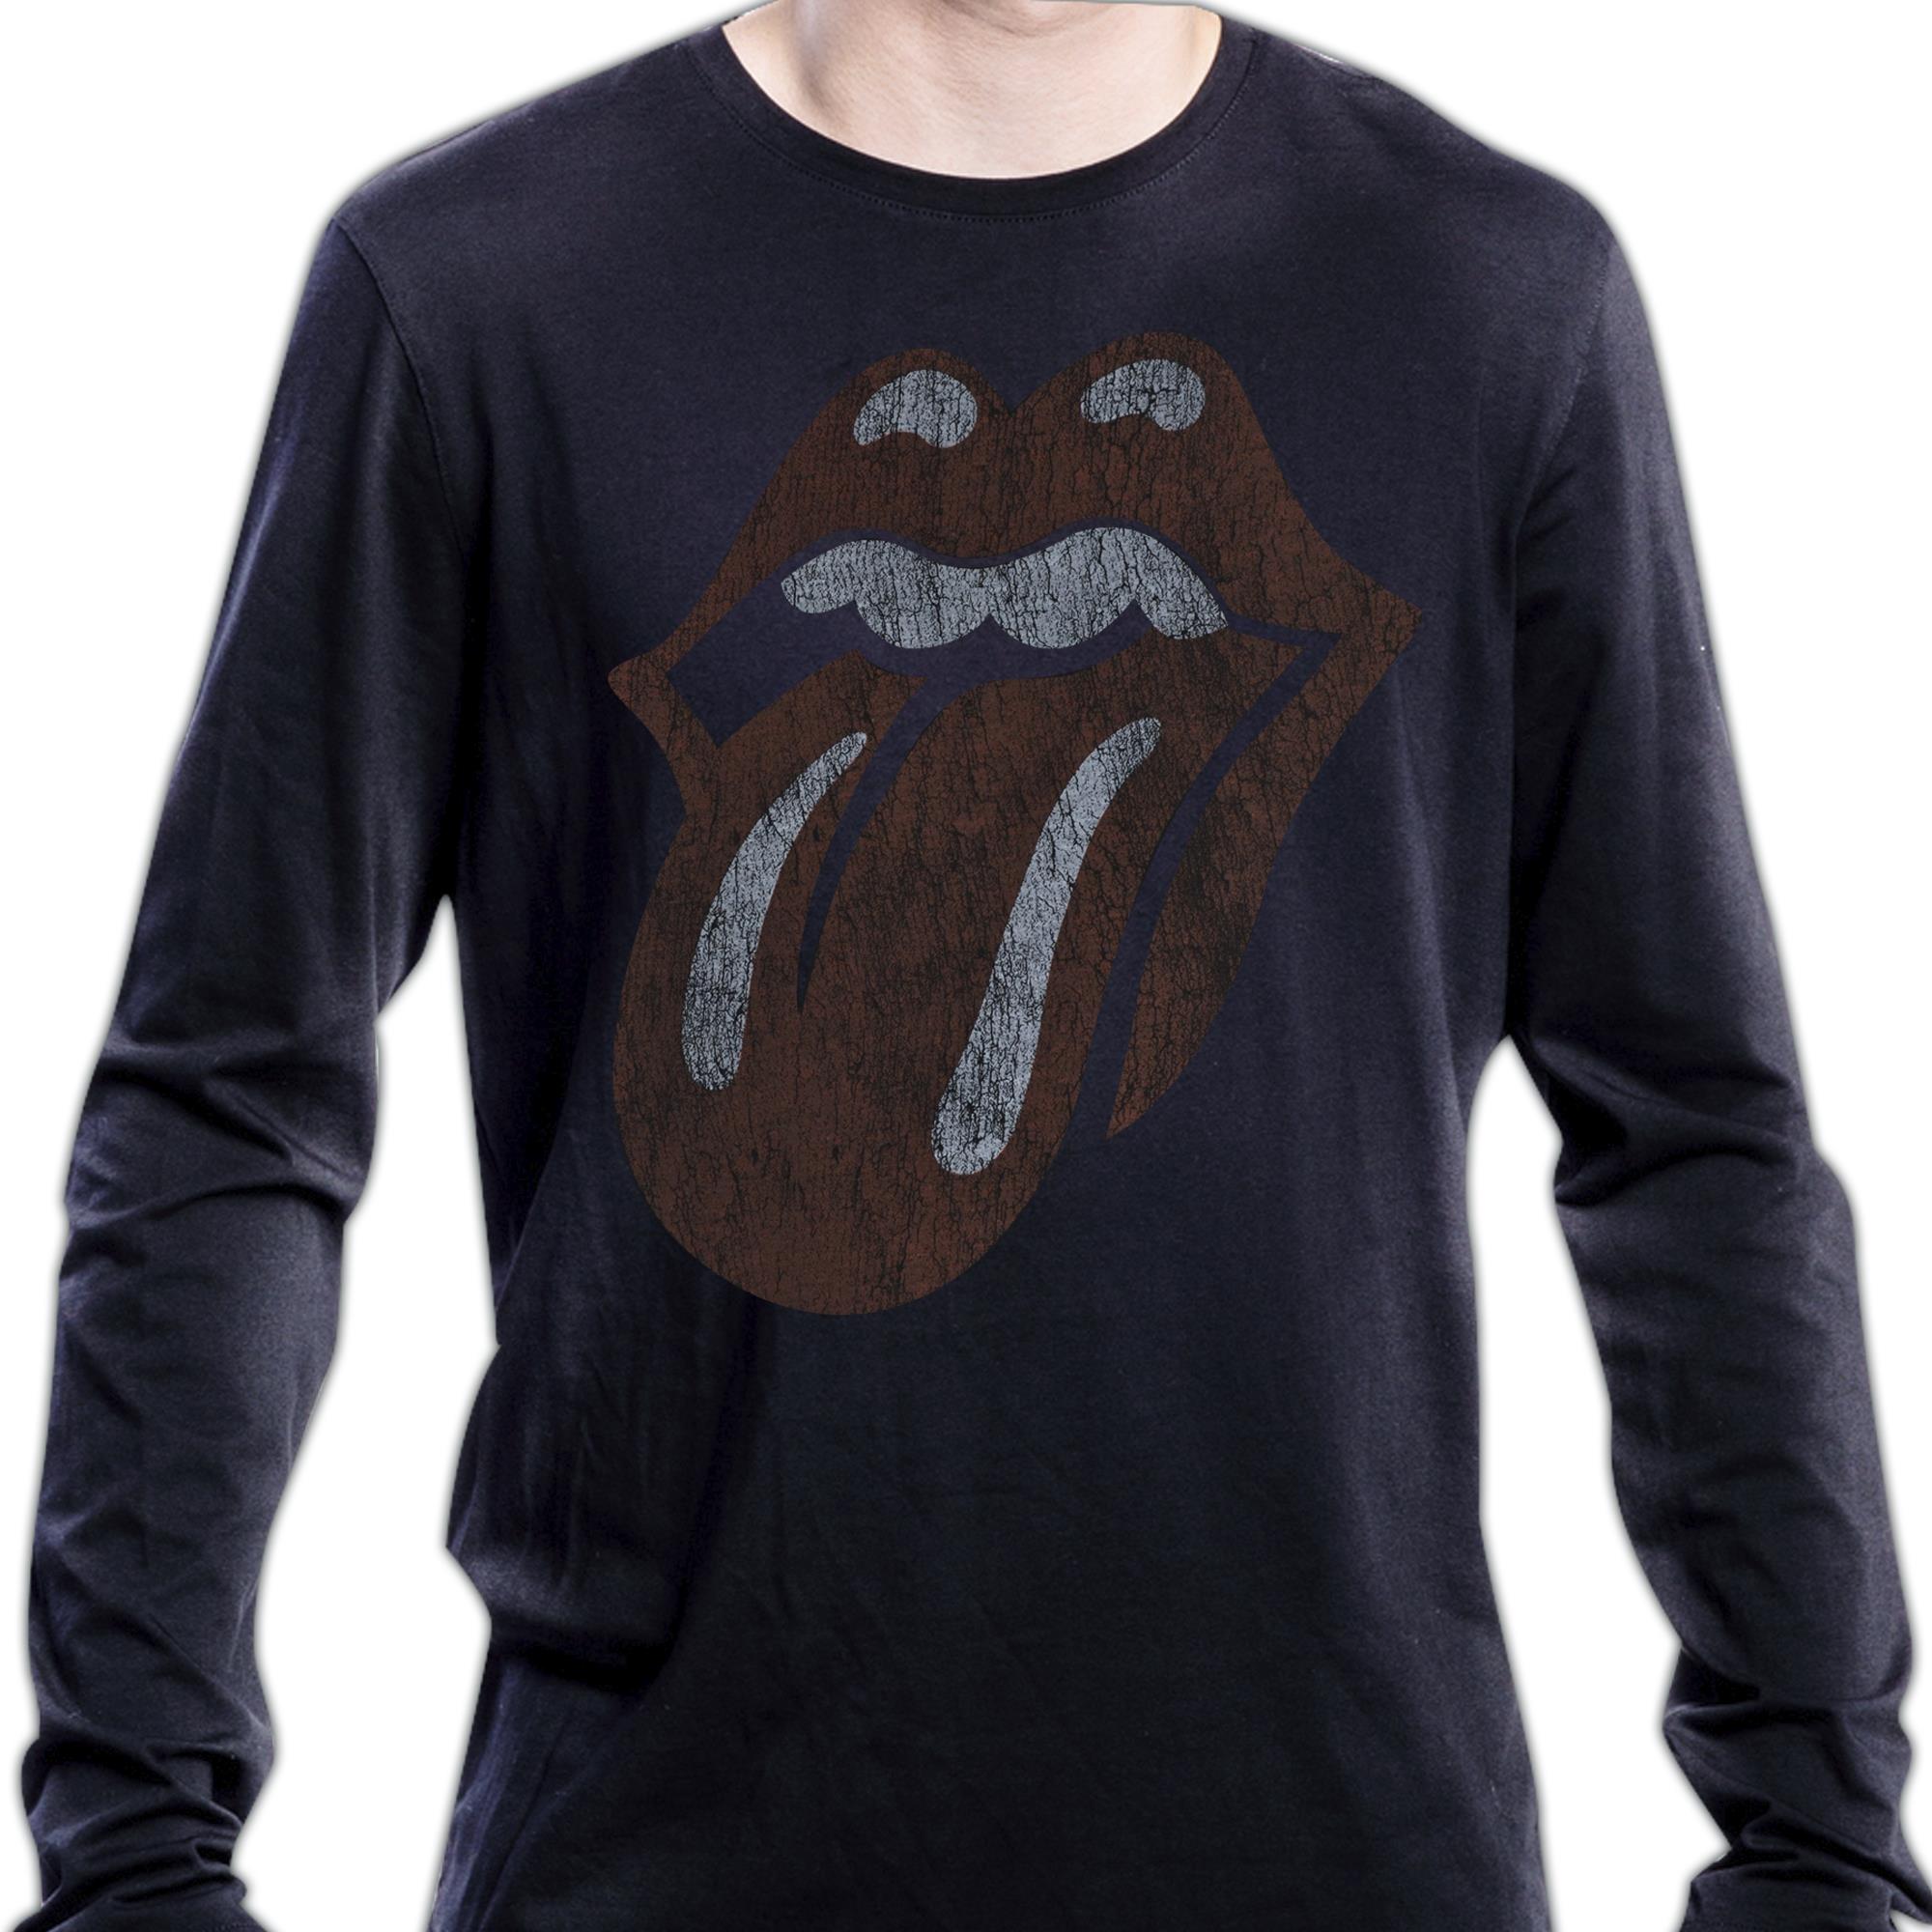 Vintage Tongue Longsleeve Shirt